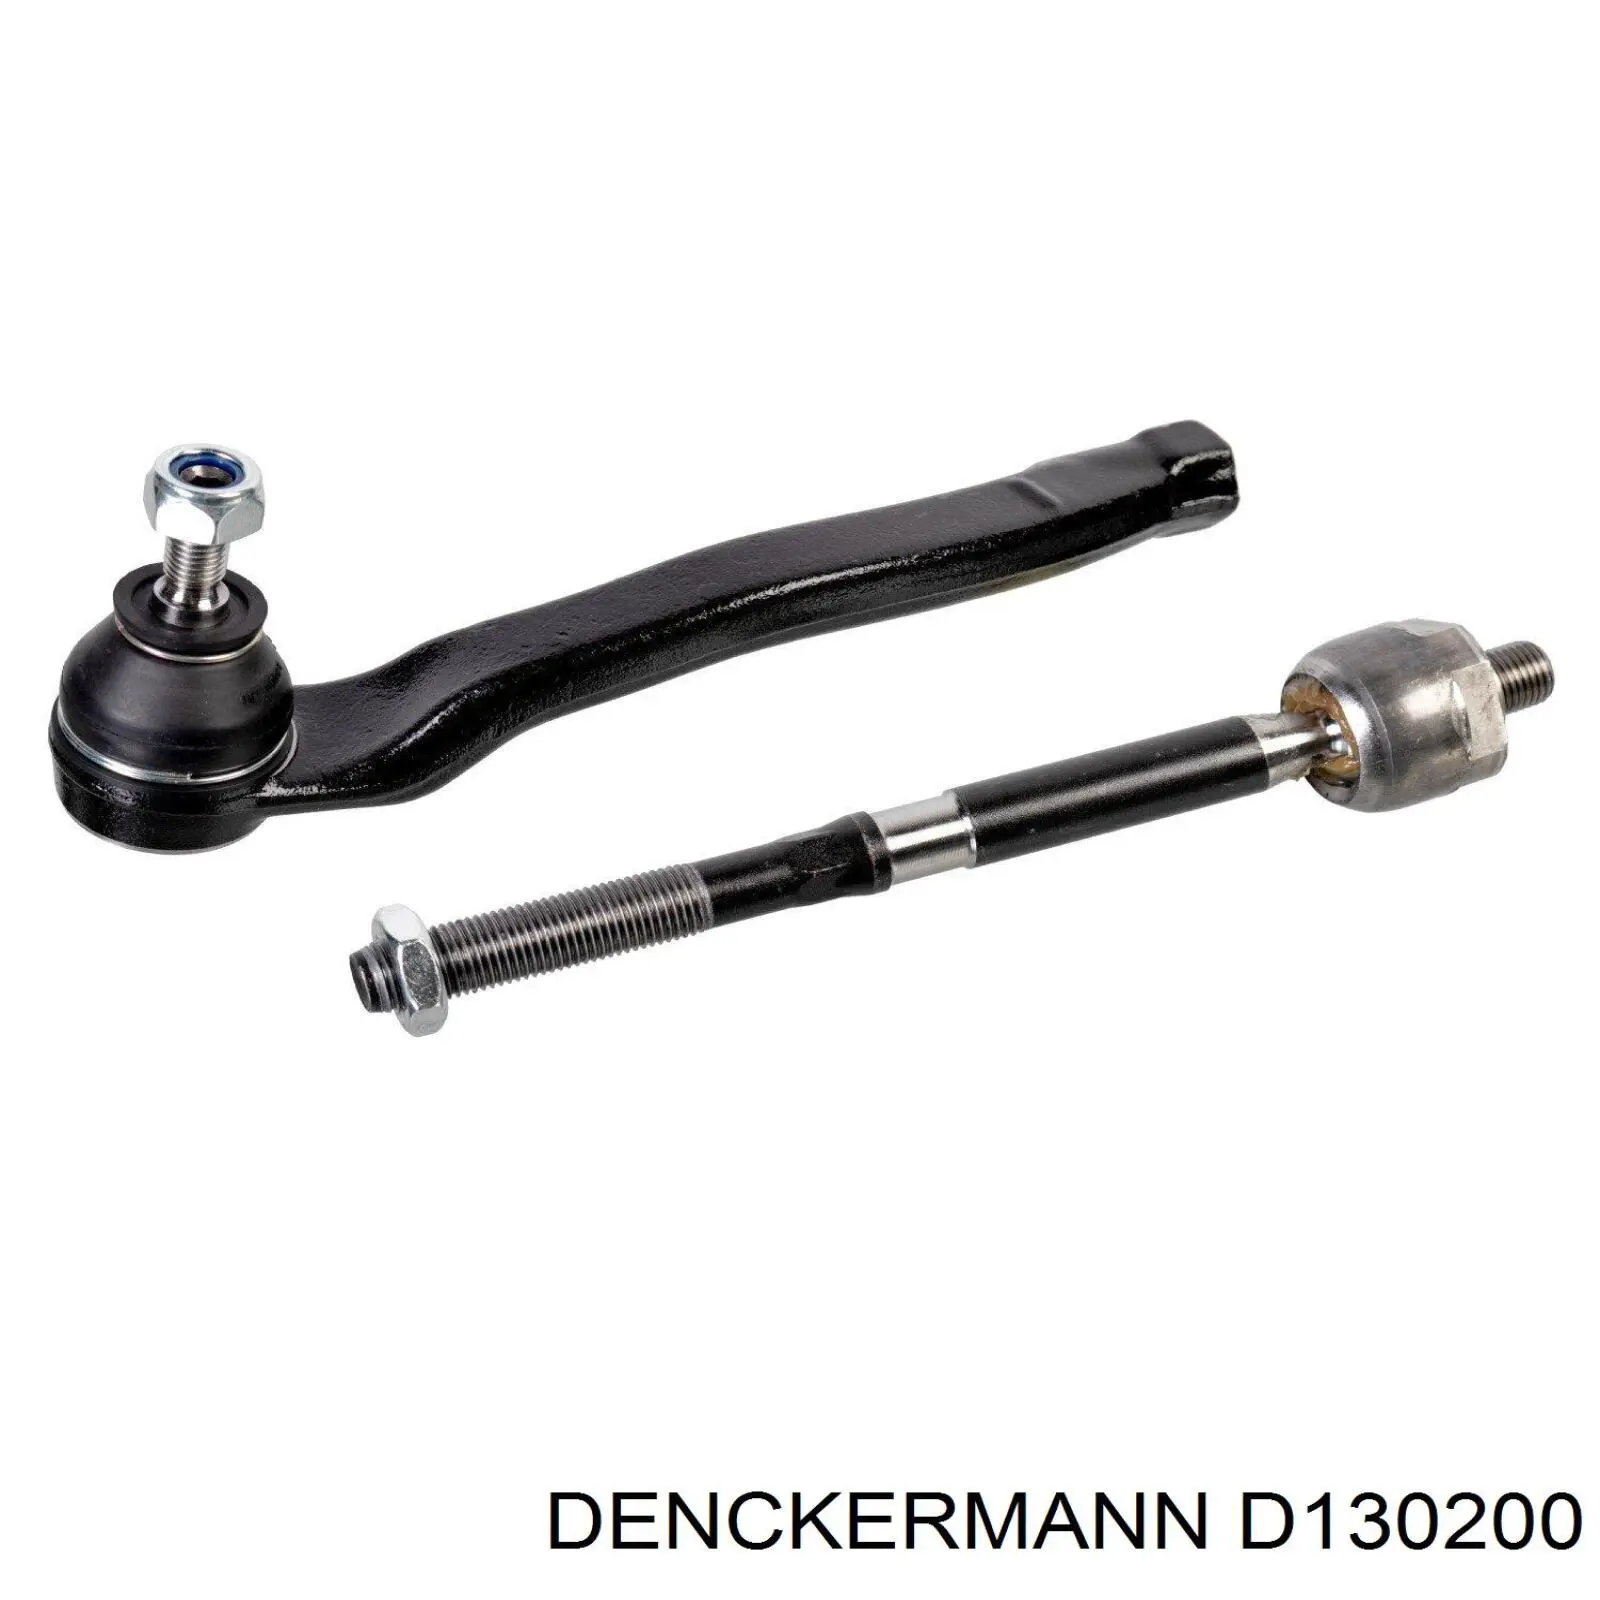 D130200 Denckermann rótula barra de acoplamiento exterior